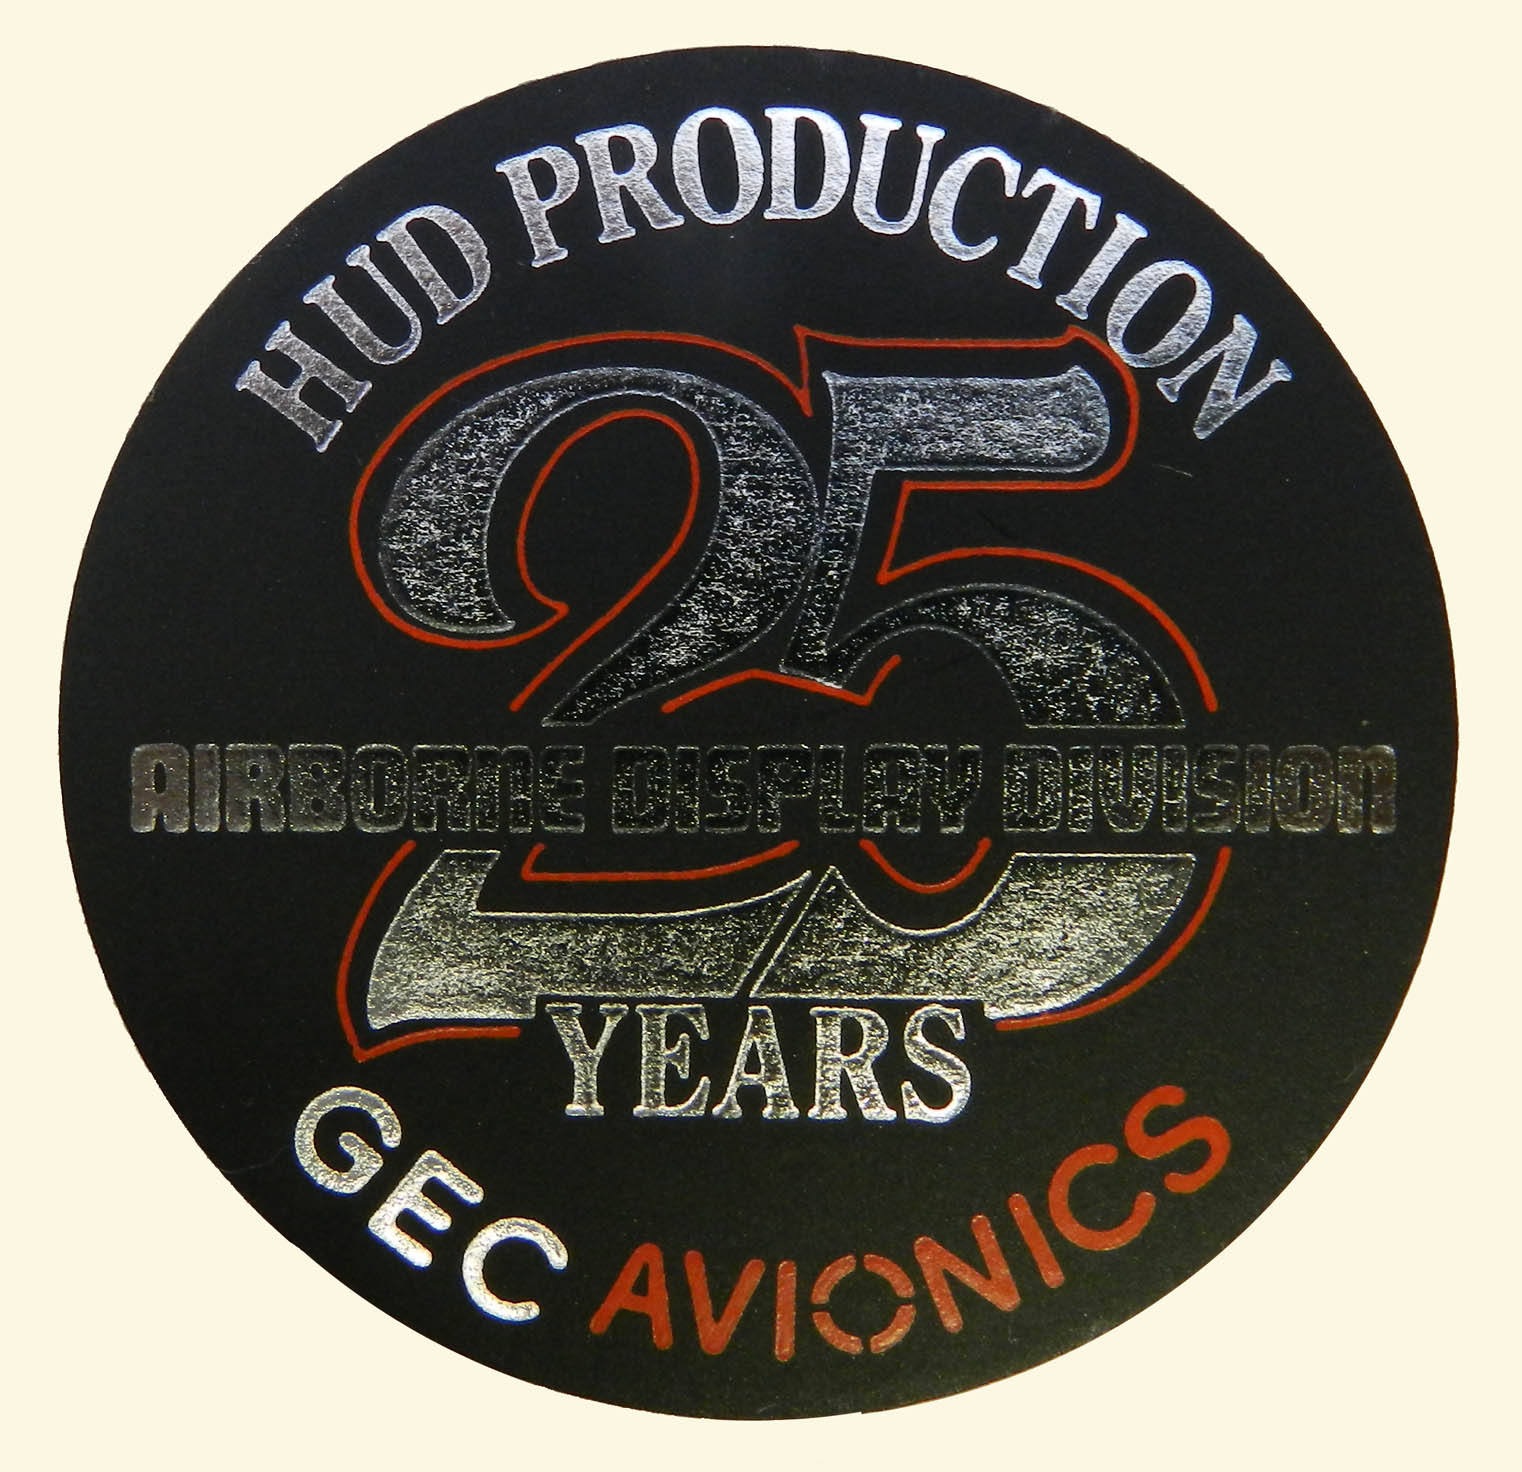 25 Years of ADD sticker